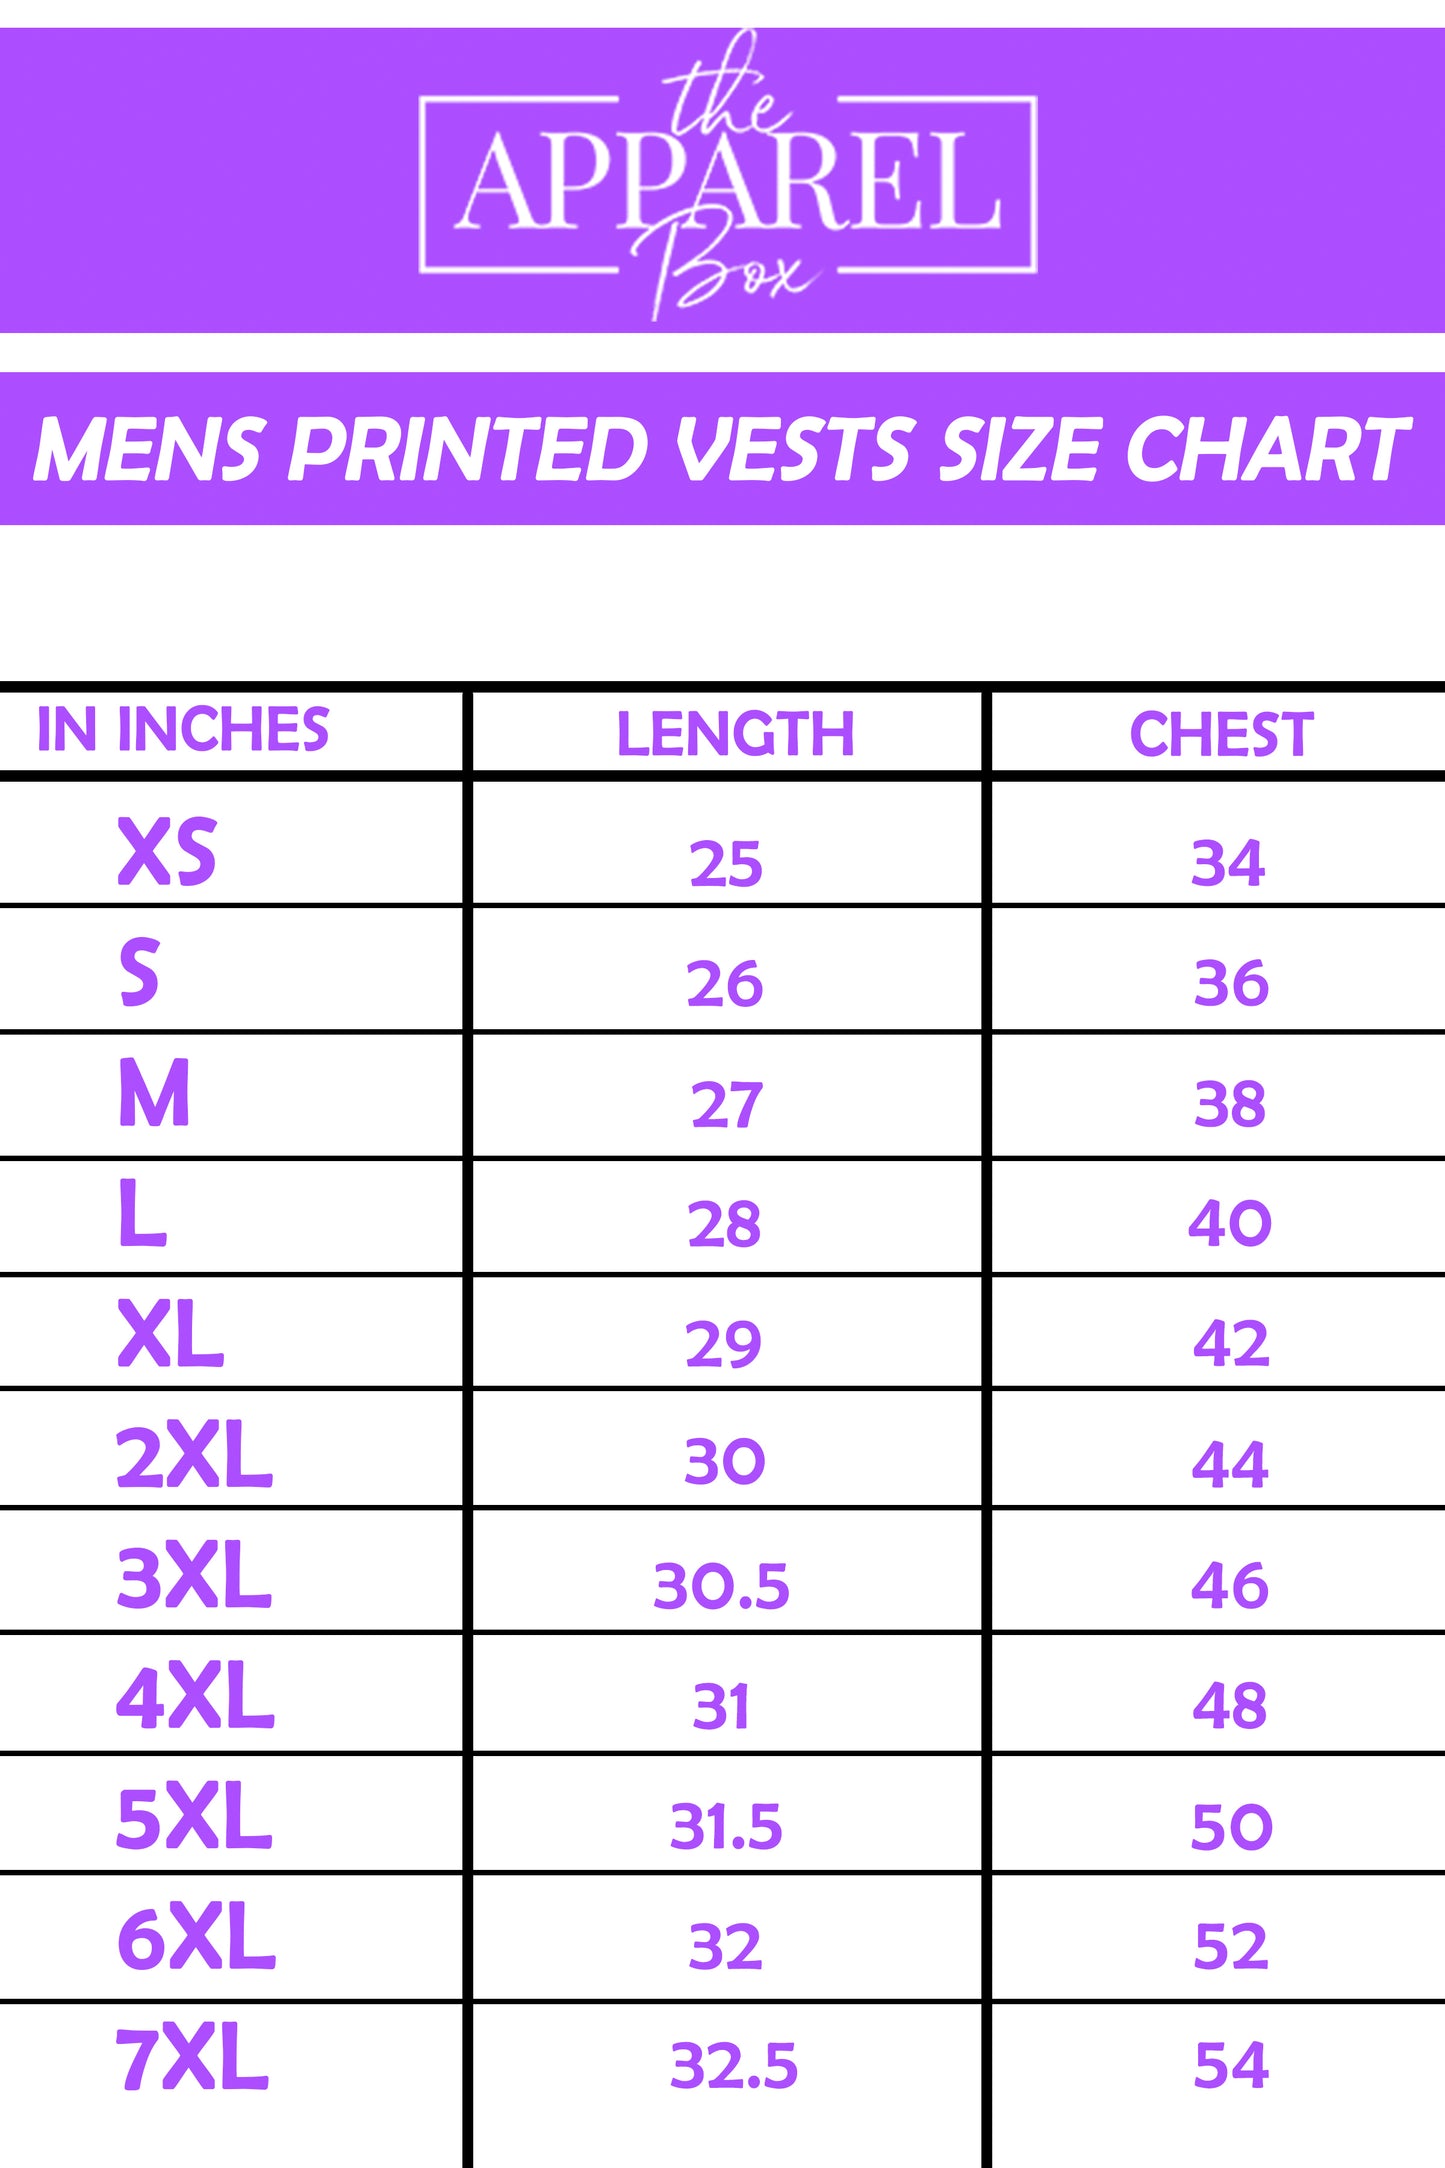 Printed Vest#15